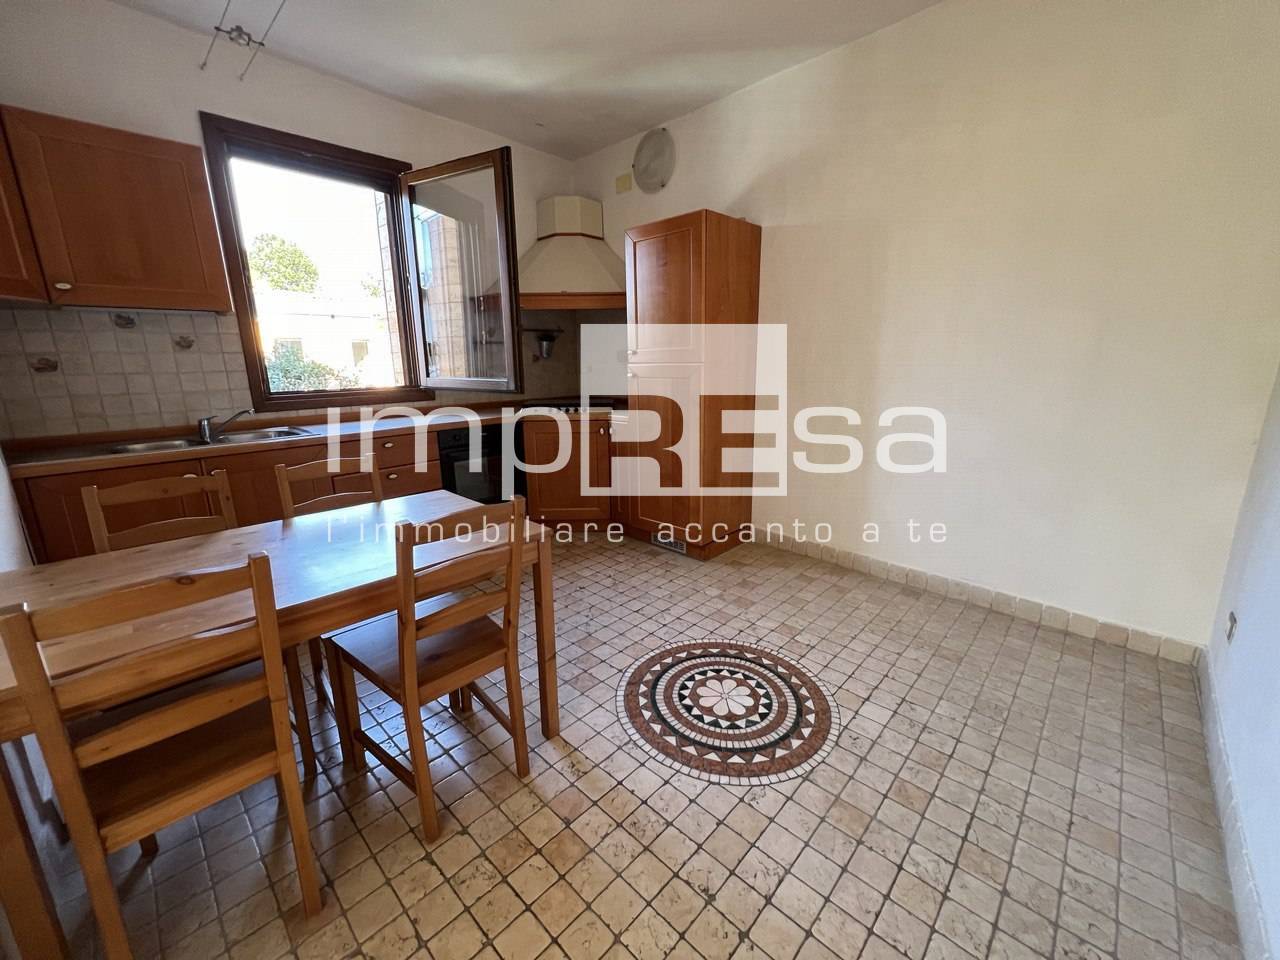 Appartamento in vendita a Mirano, 3 locali, prezzo € 115.000 | PortaleAgenzieImmobiliari.it